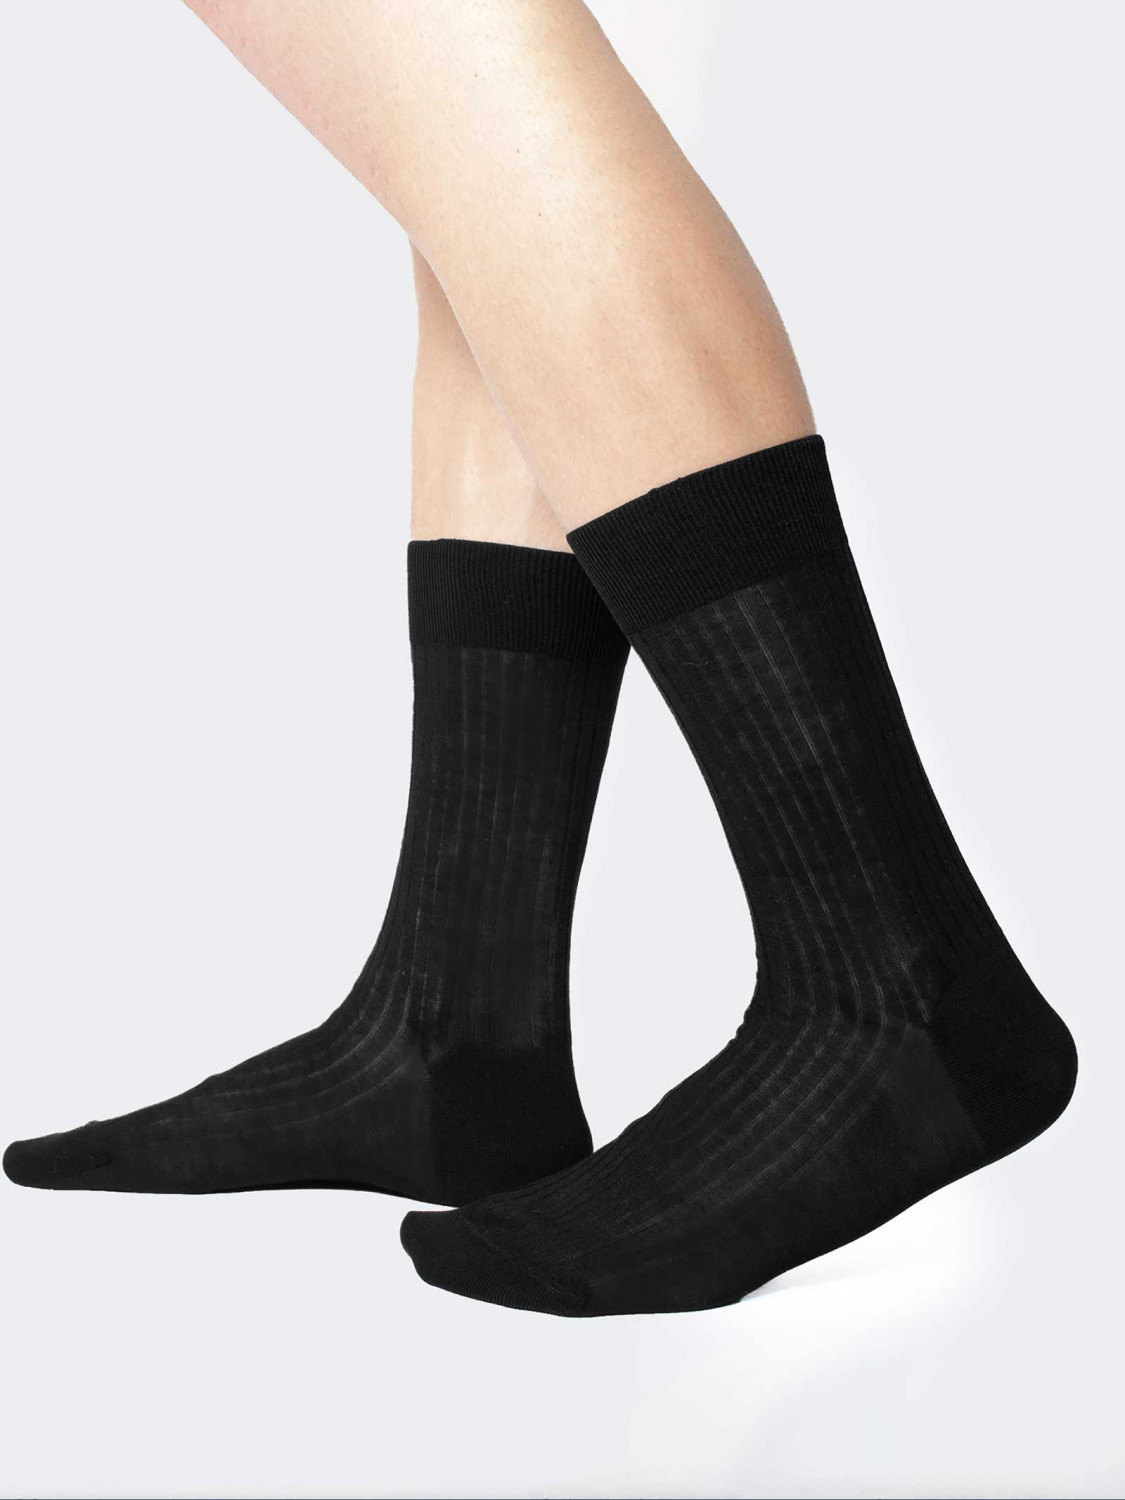 100% Filo di Scozia wide rib calf socks - Made in Italy